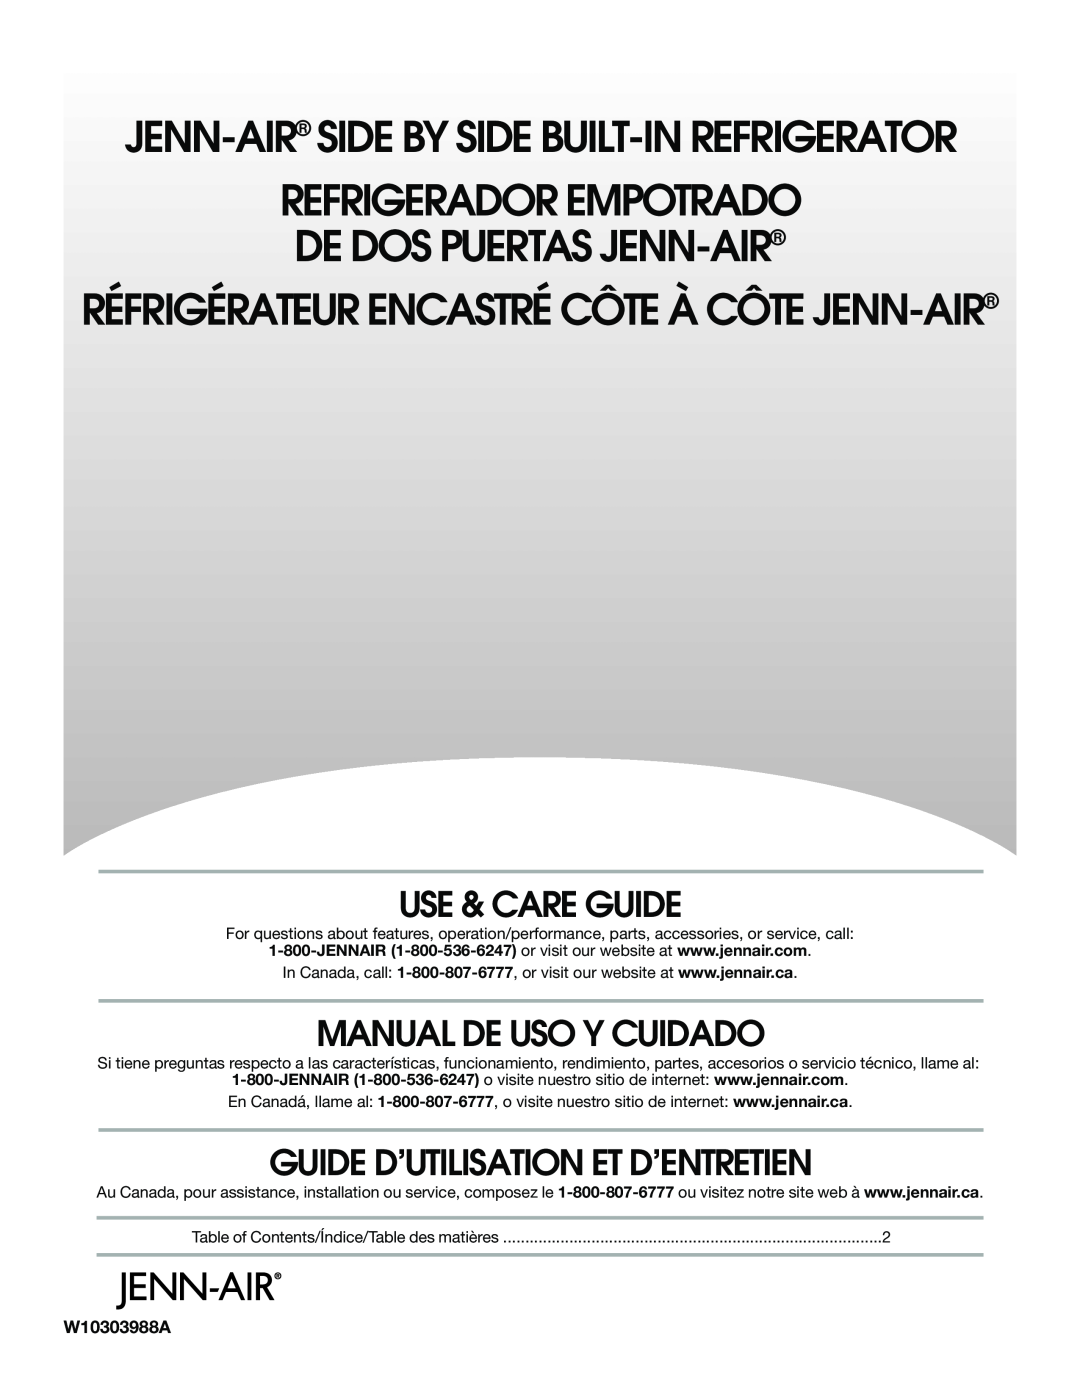 Jenn-Air W10303988A manual Use & Care Guide, Manual De Uso Y Cuidado, Guide D’Utilisation Et D’Entretien 